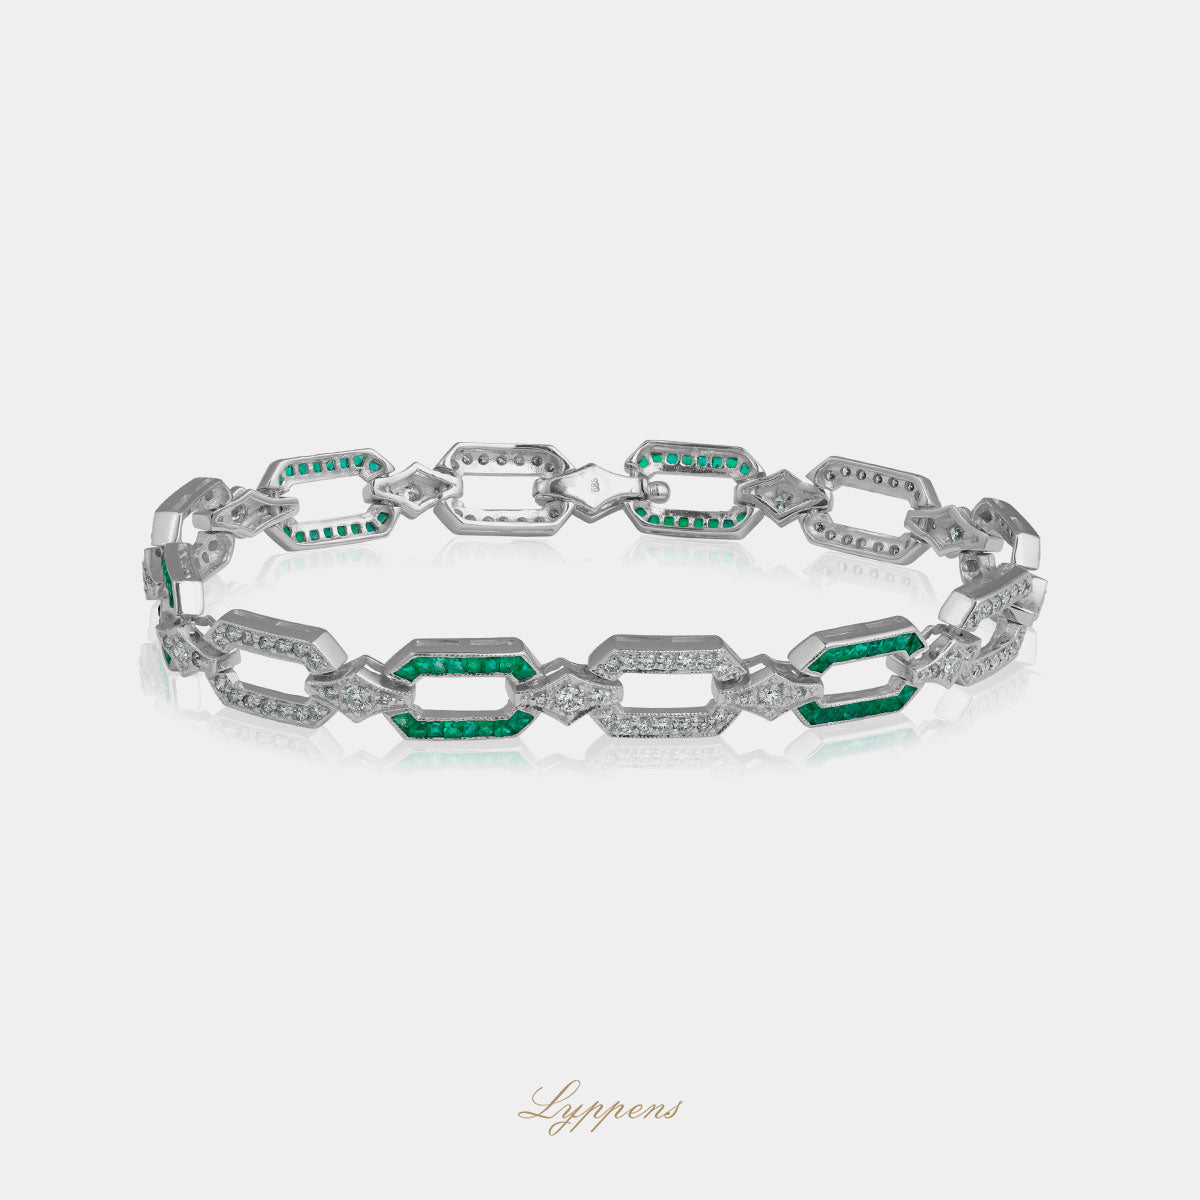 Witgouden Art Deco vintage stijl armband gezet met smaragd en diamant.